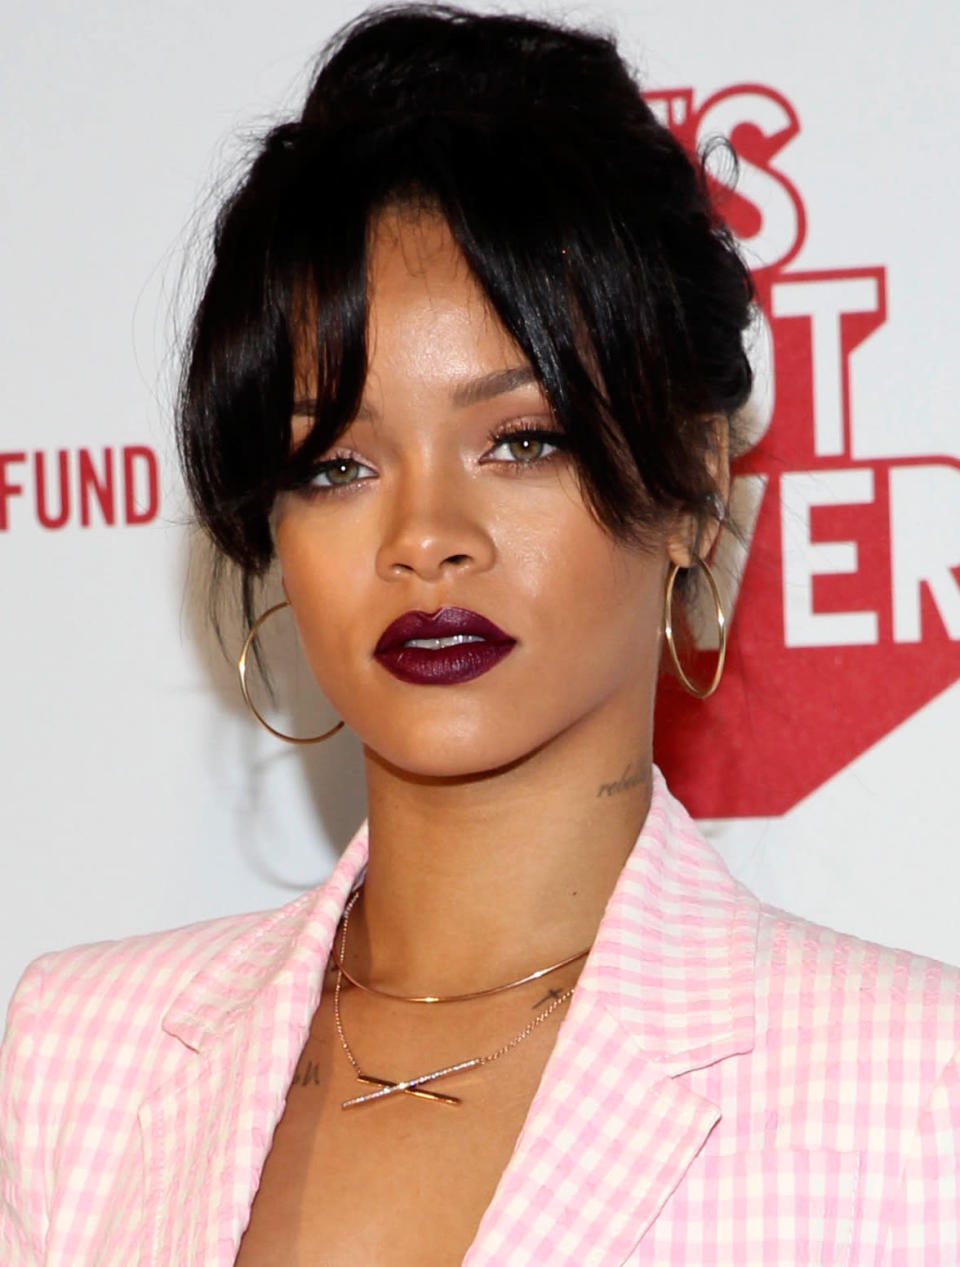 Ganz ähnlicher Look hier auch bei Rihanna – sexy und edel zugleich. Die dunklen Lippen lassen allerdings nicht nur reifer, sondern auch etwas älter wirken.